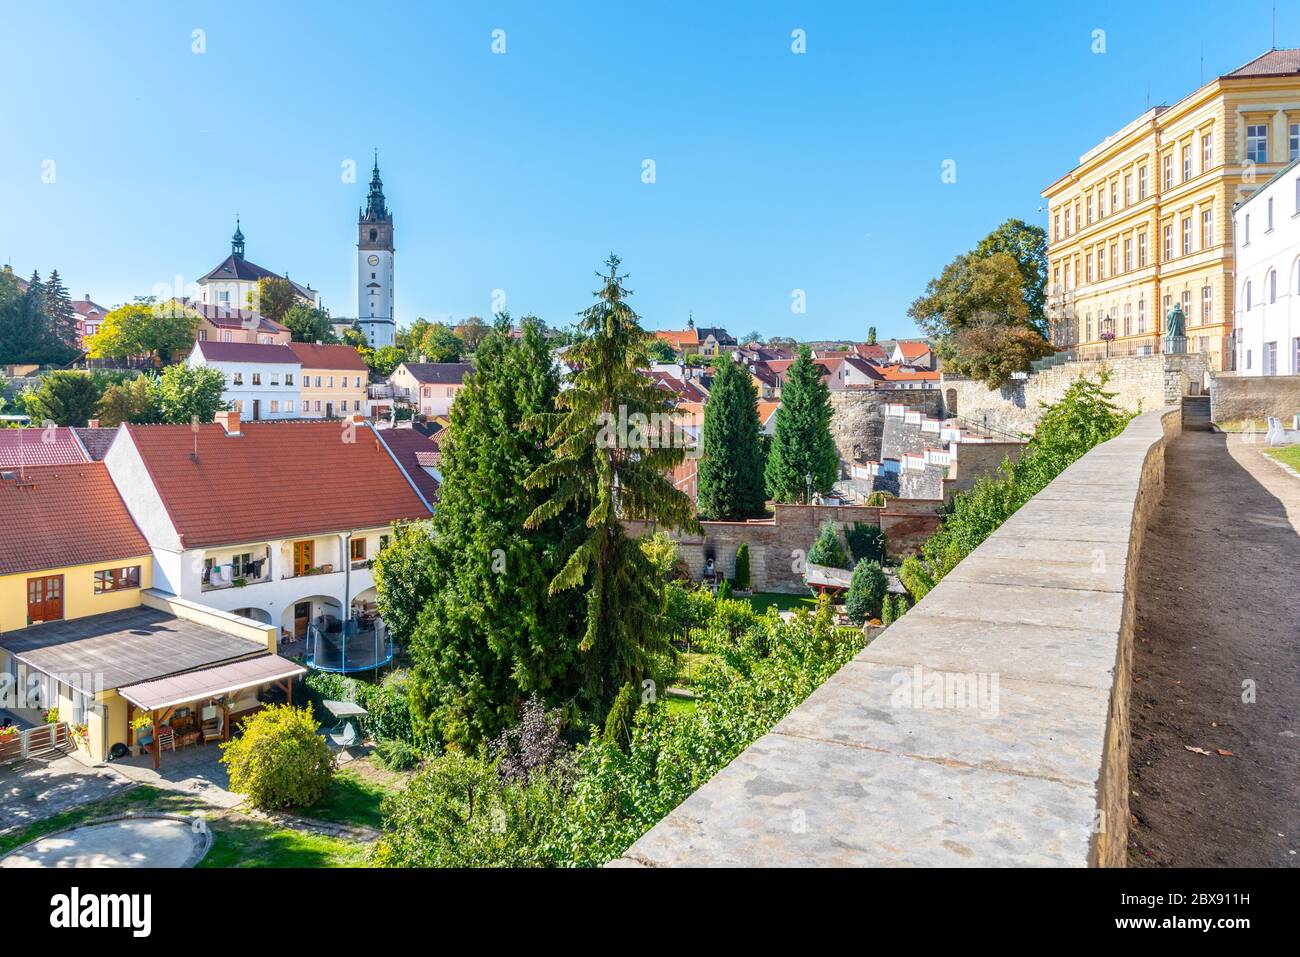 Paysage urbain avec cathédrale baroque Saint-Étienne et clocher, Litomerice, République tchèque. Vue depuis les murs de fortification et baileys. Banque D'Images